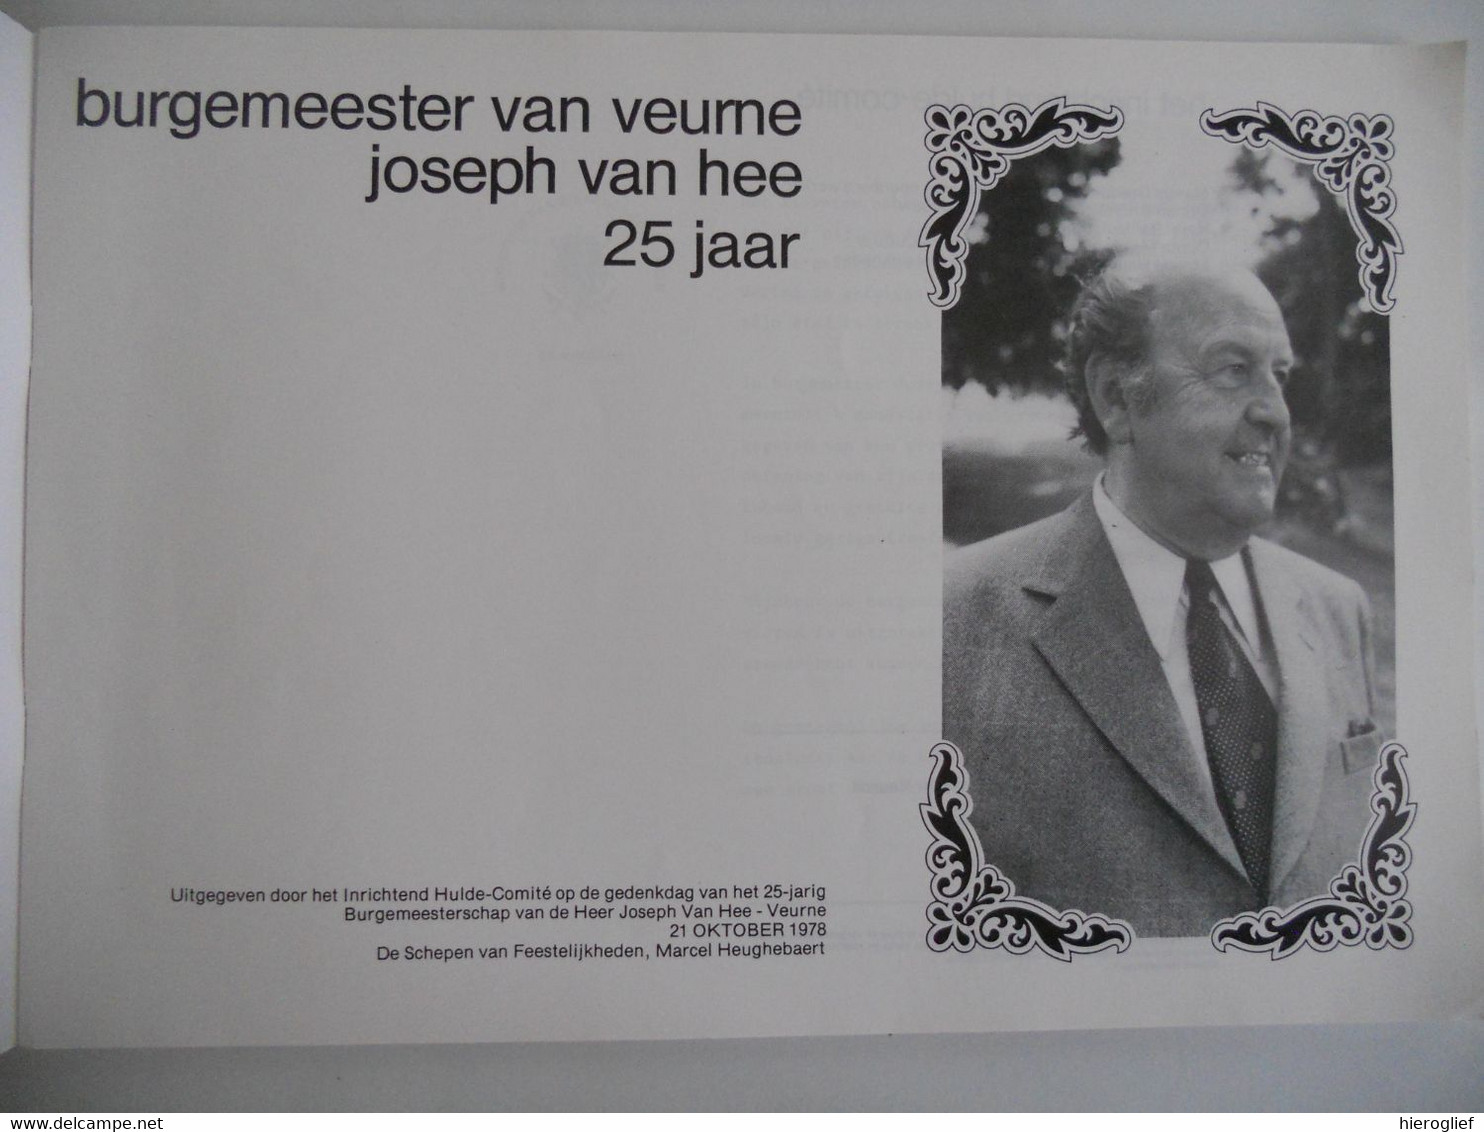 Jubileum-album JOSEPH VAN HEE Burgemeester VEURNE 1953-1978 Houtem Beauvoorde Steenkerke Blskamp Avekapelle ... - Histoire